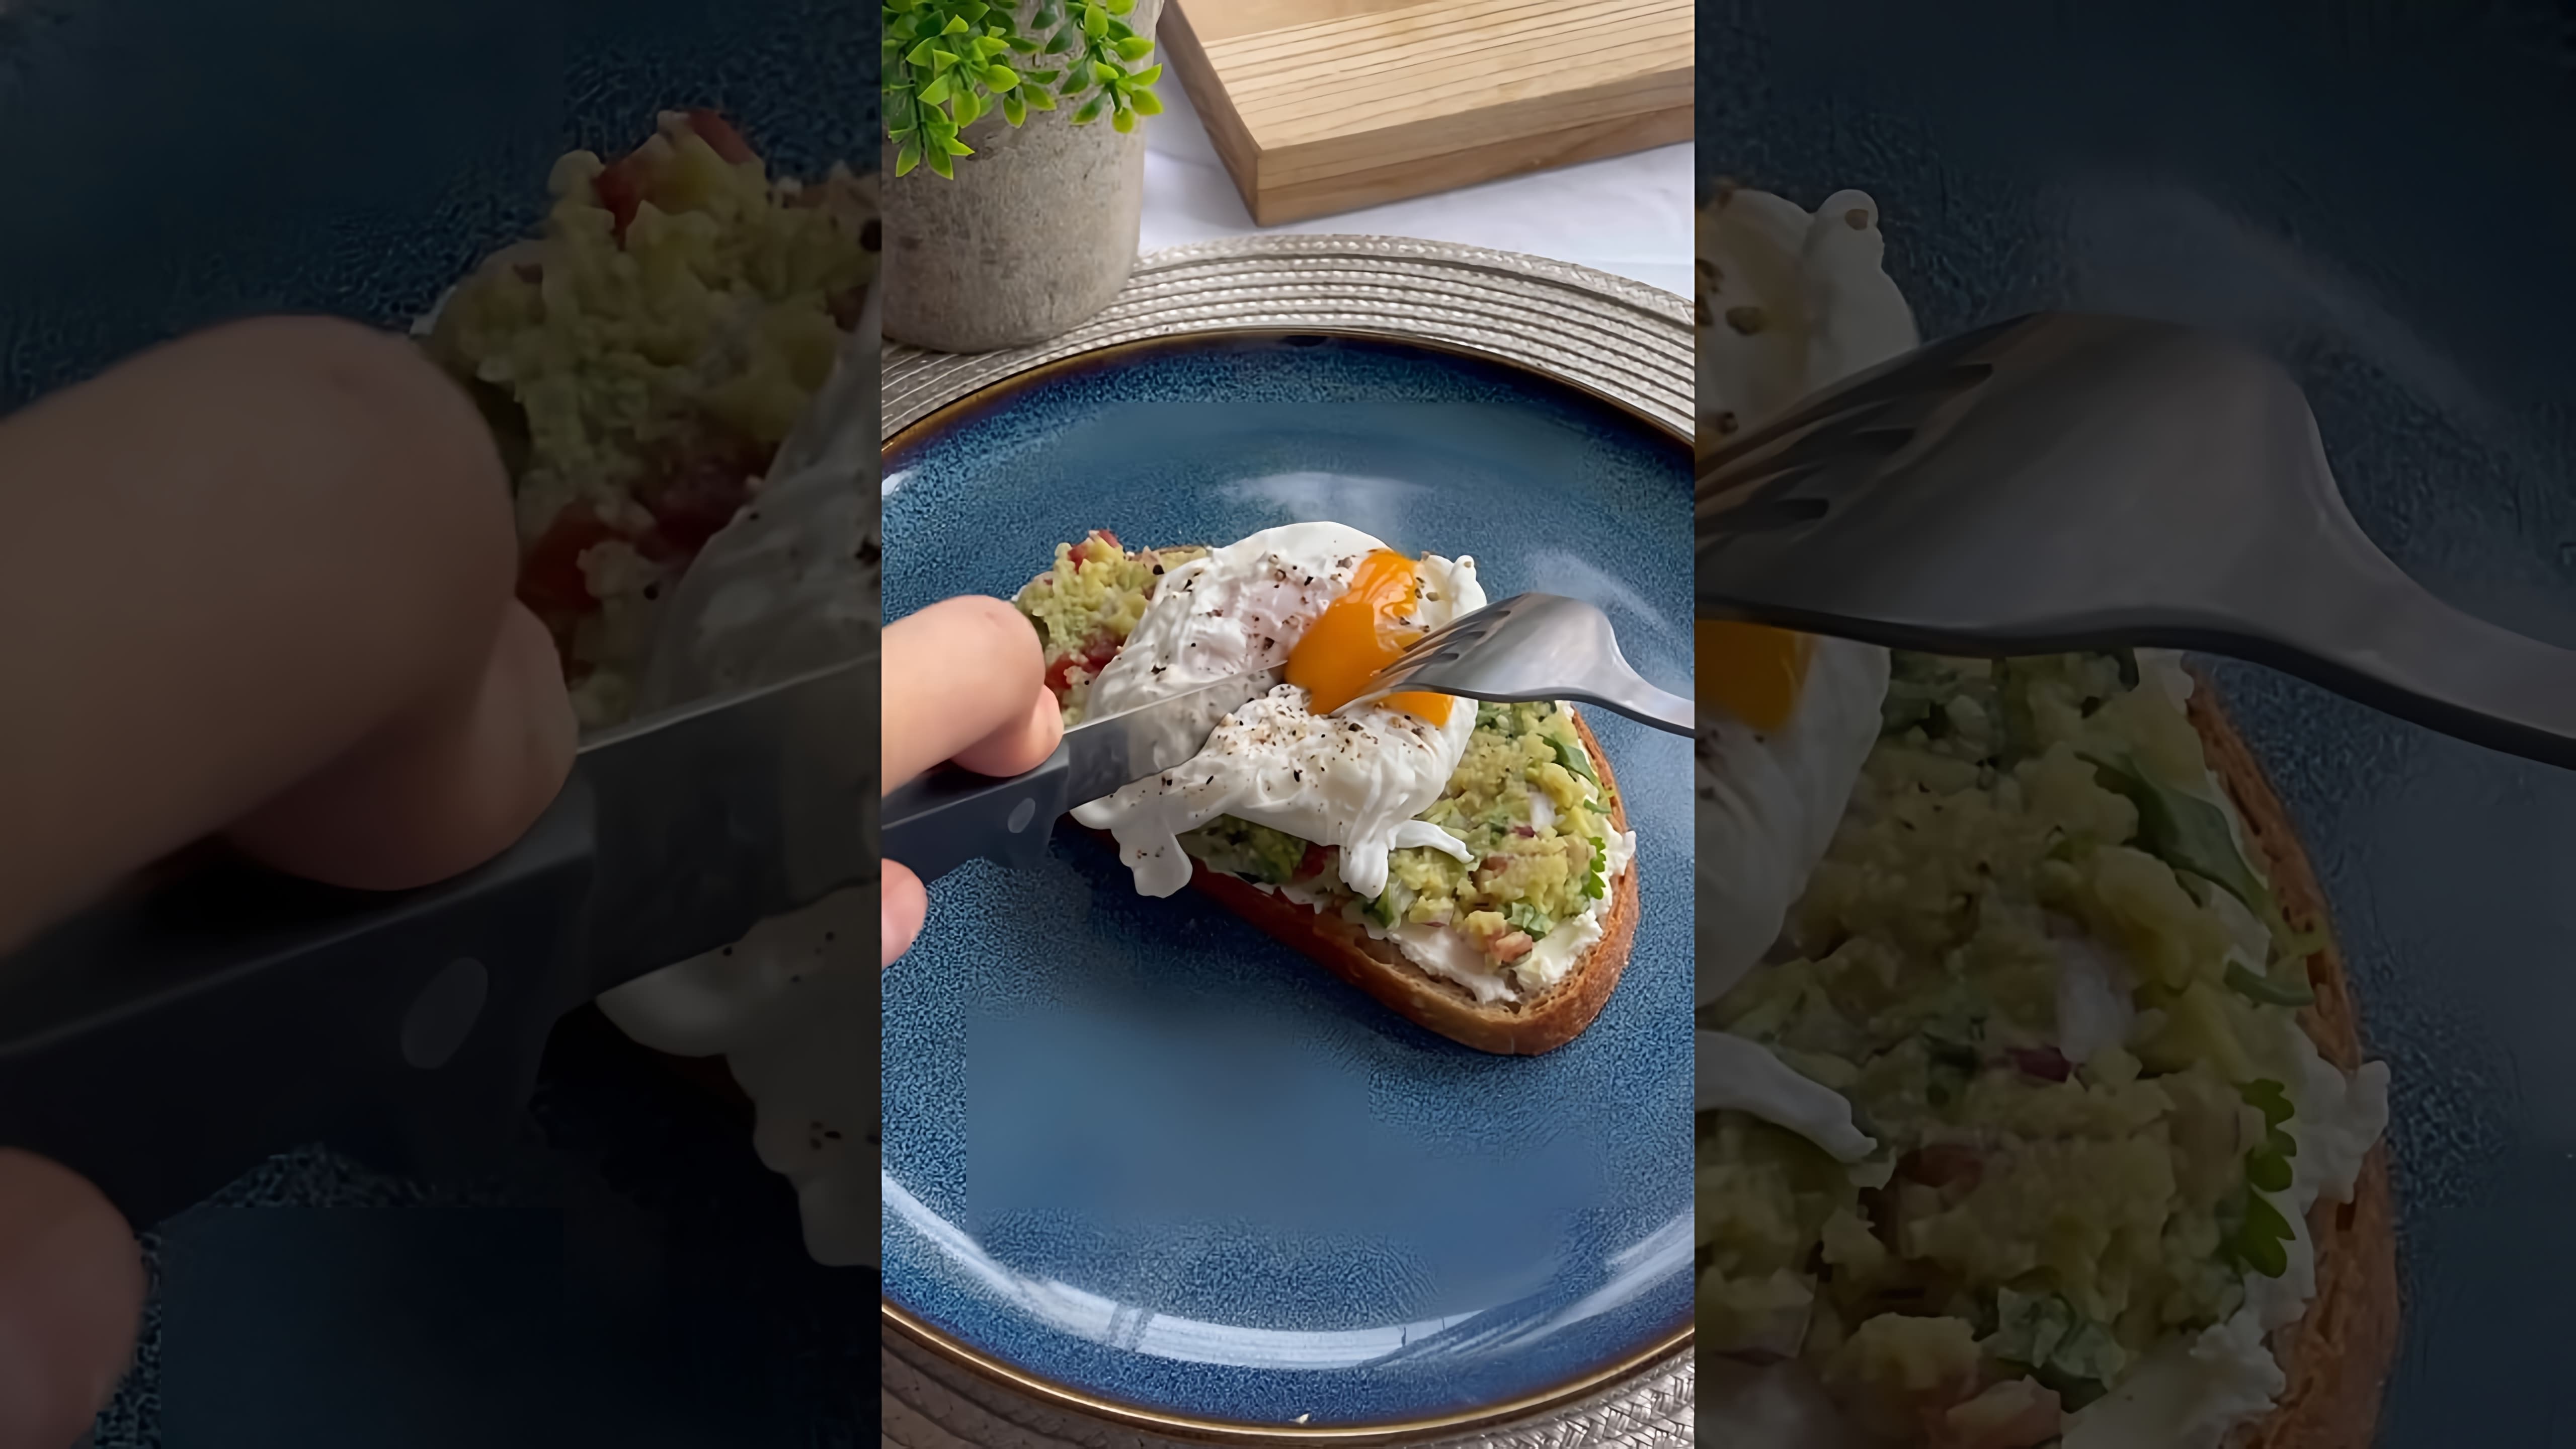 Видео: Тост с гуакомоле и яйцом пашот🥑 #рецепты #рекомендации #шортс #завтрак #тосты #рек